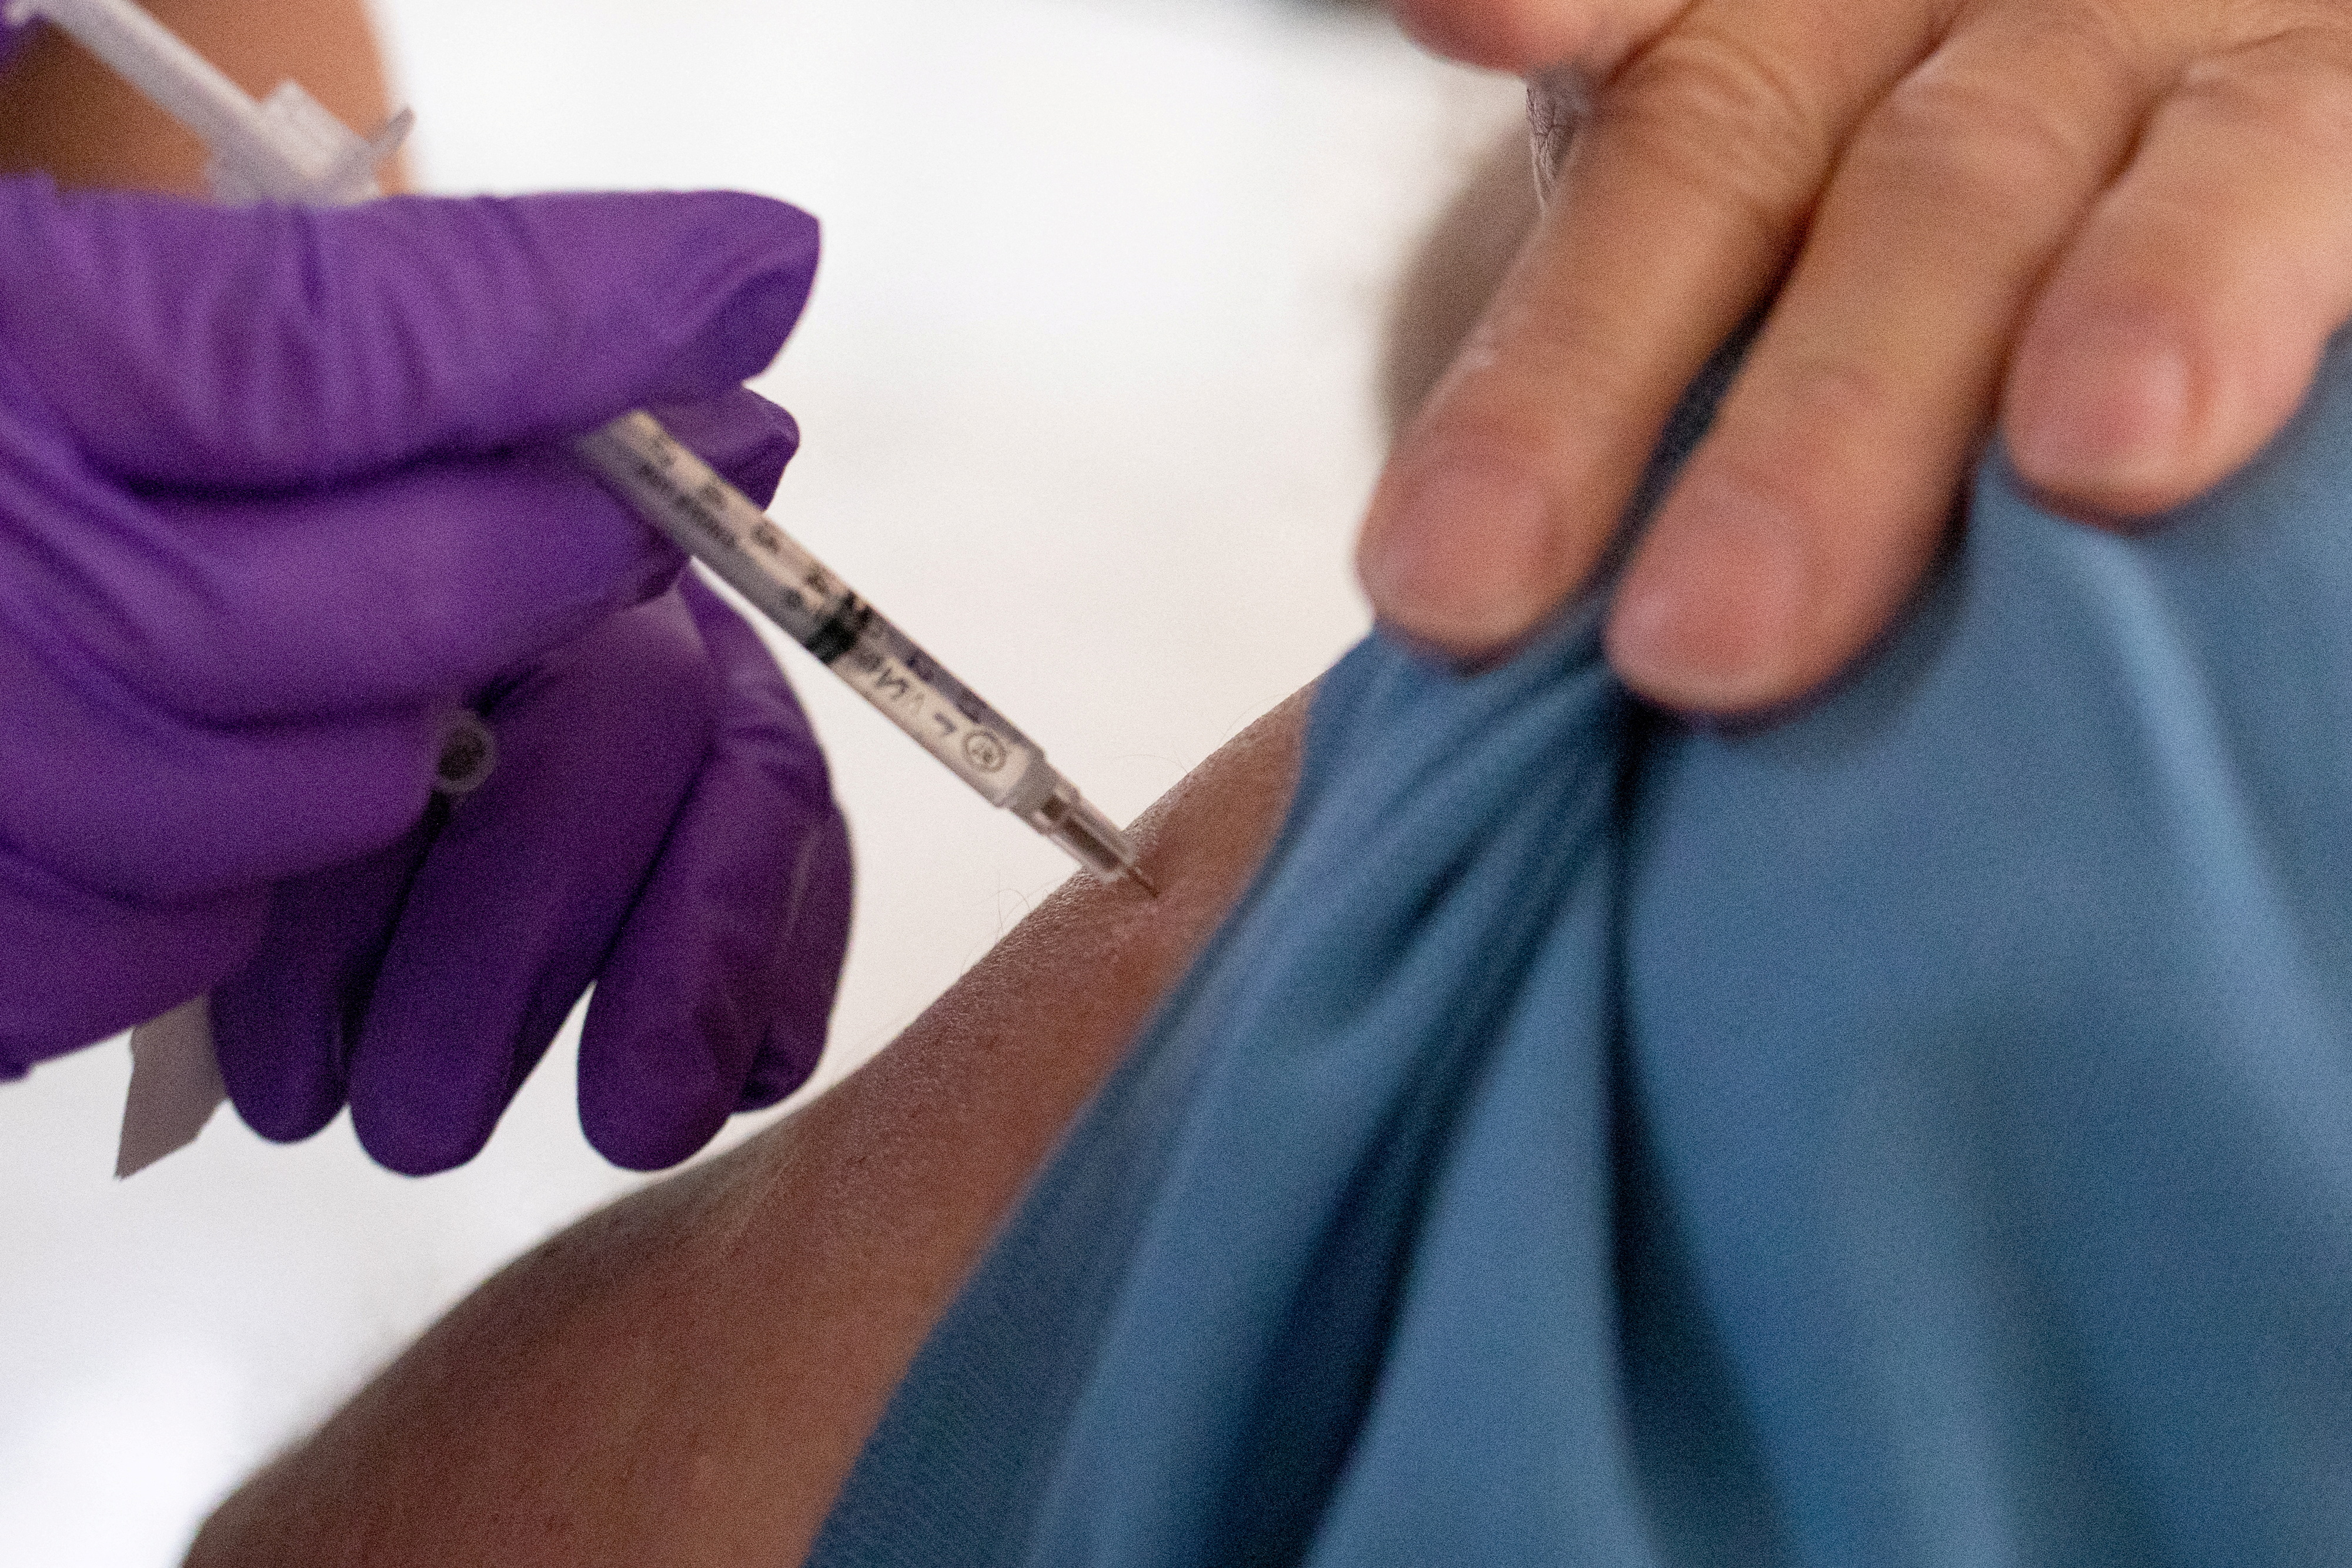 Un cambio que podría hacer que las vacunas sean más efectivas sería que pudieran detener el virus justo cuando ingresa al cuerpo. Esto podría reducir las infecciones por completo, así como la propagación del virus (REUTERS)